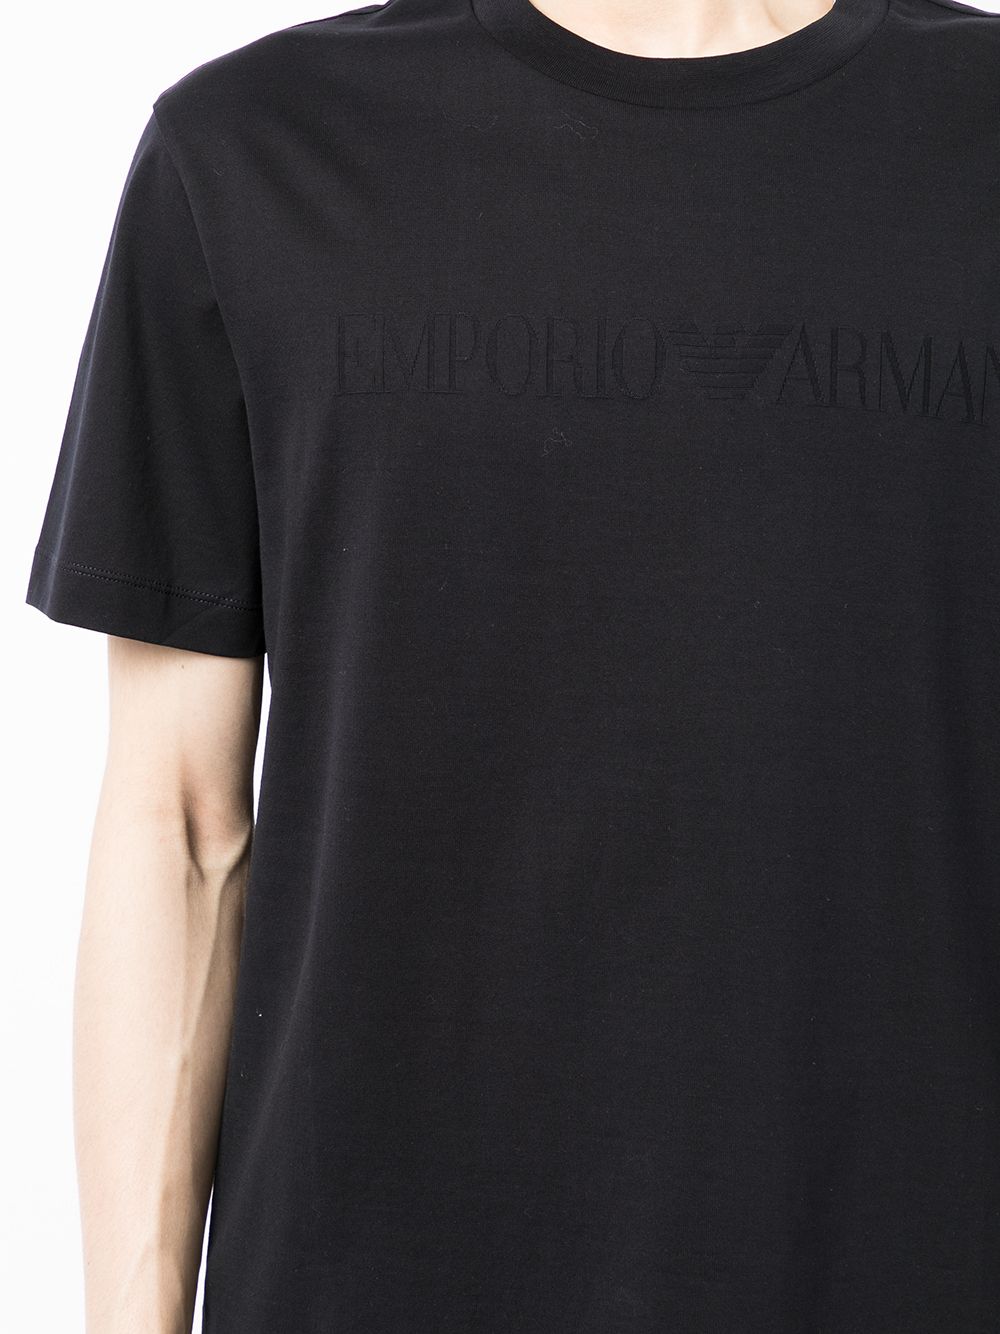 Blue Emporio logo t-shirt